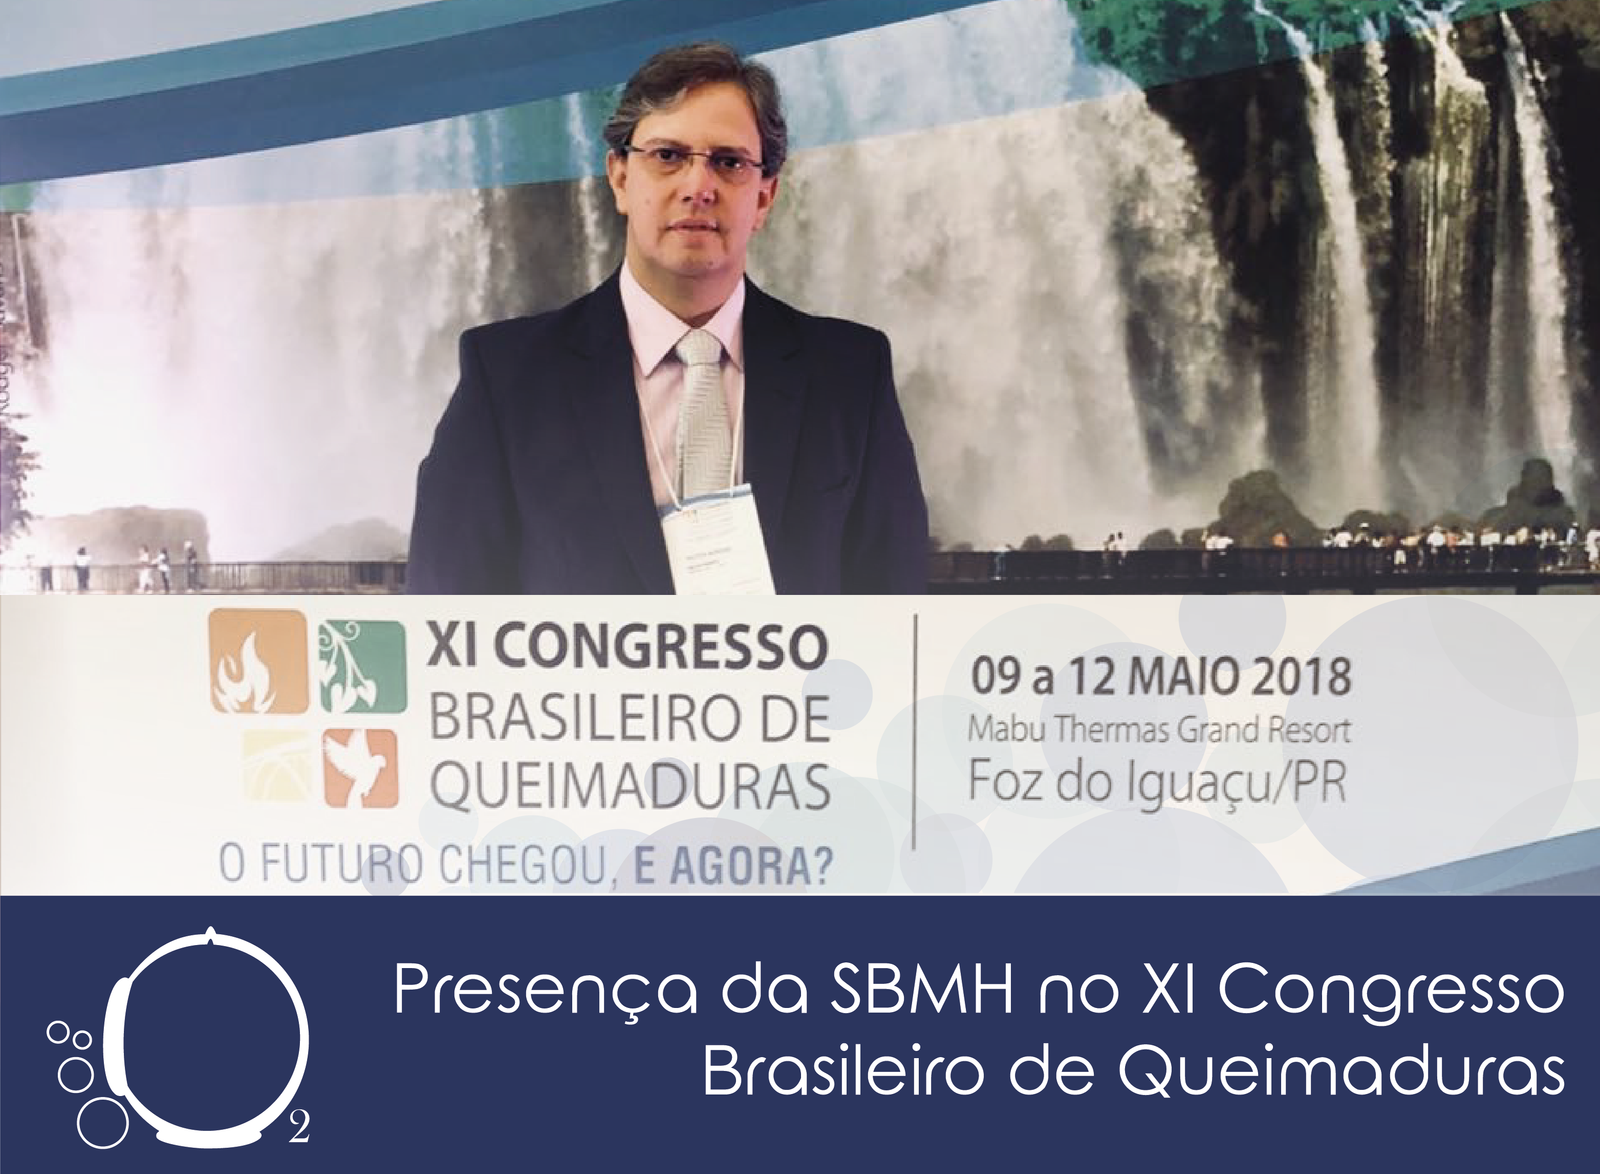 SBMH no XI congresso brasileiro de queimaduras<